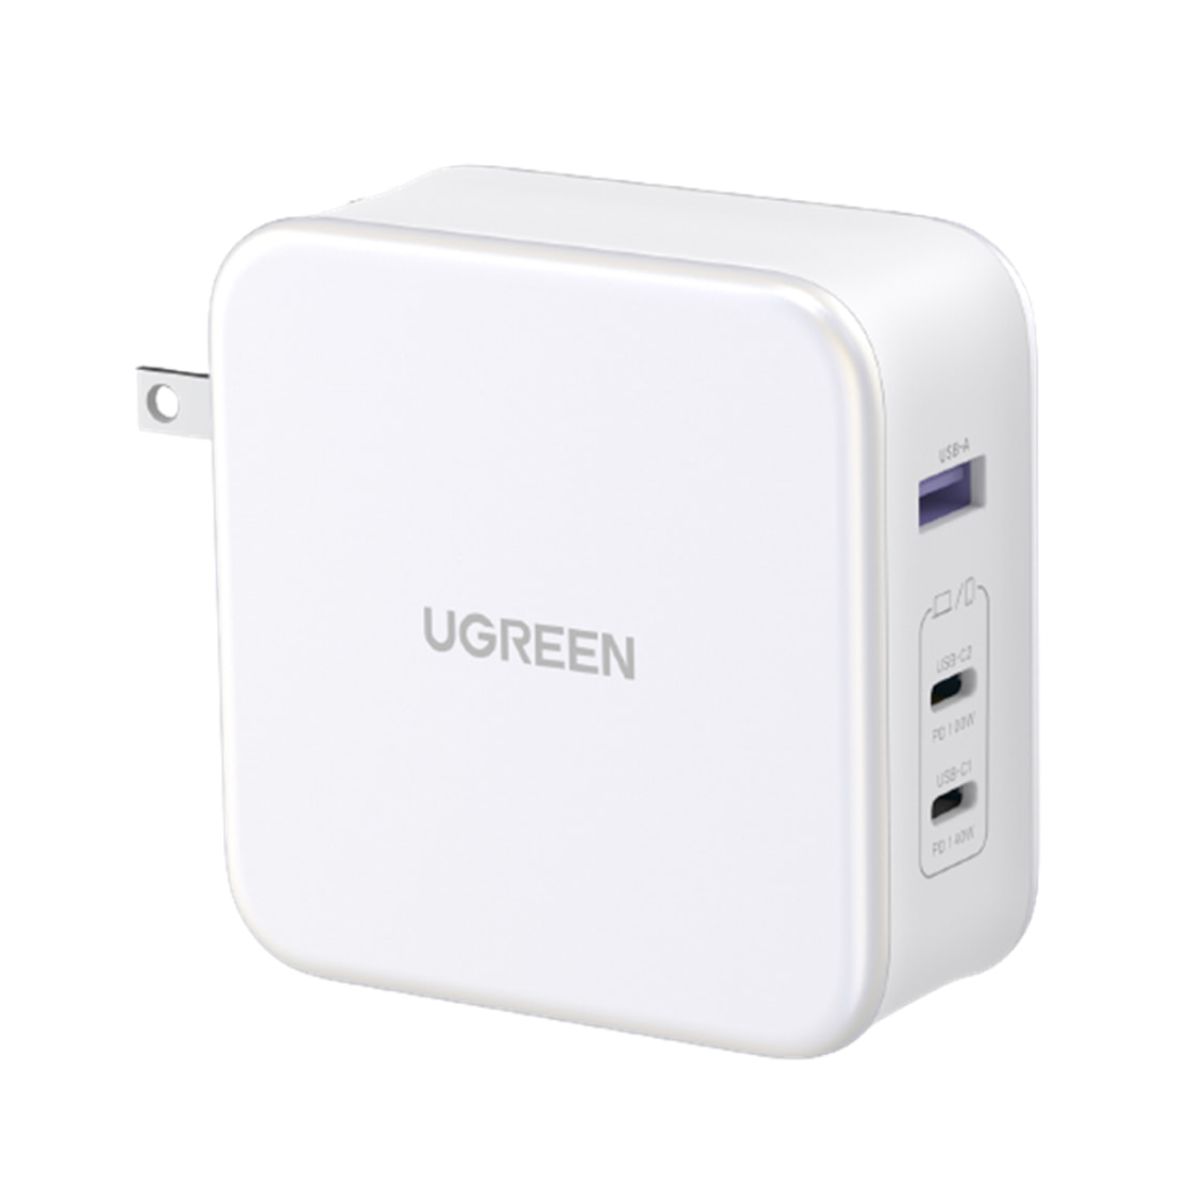 Bộ sạc nhanh Ugreen 15338 CD289 màu trắng, 2 cổng USB Type-C và 1 cổng USB Type-A, công suất 140W